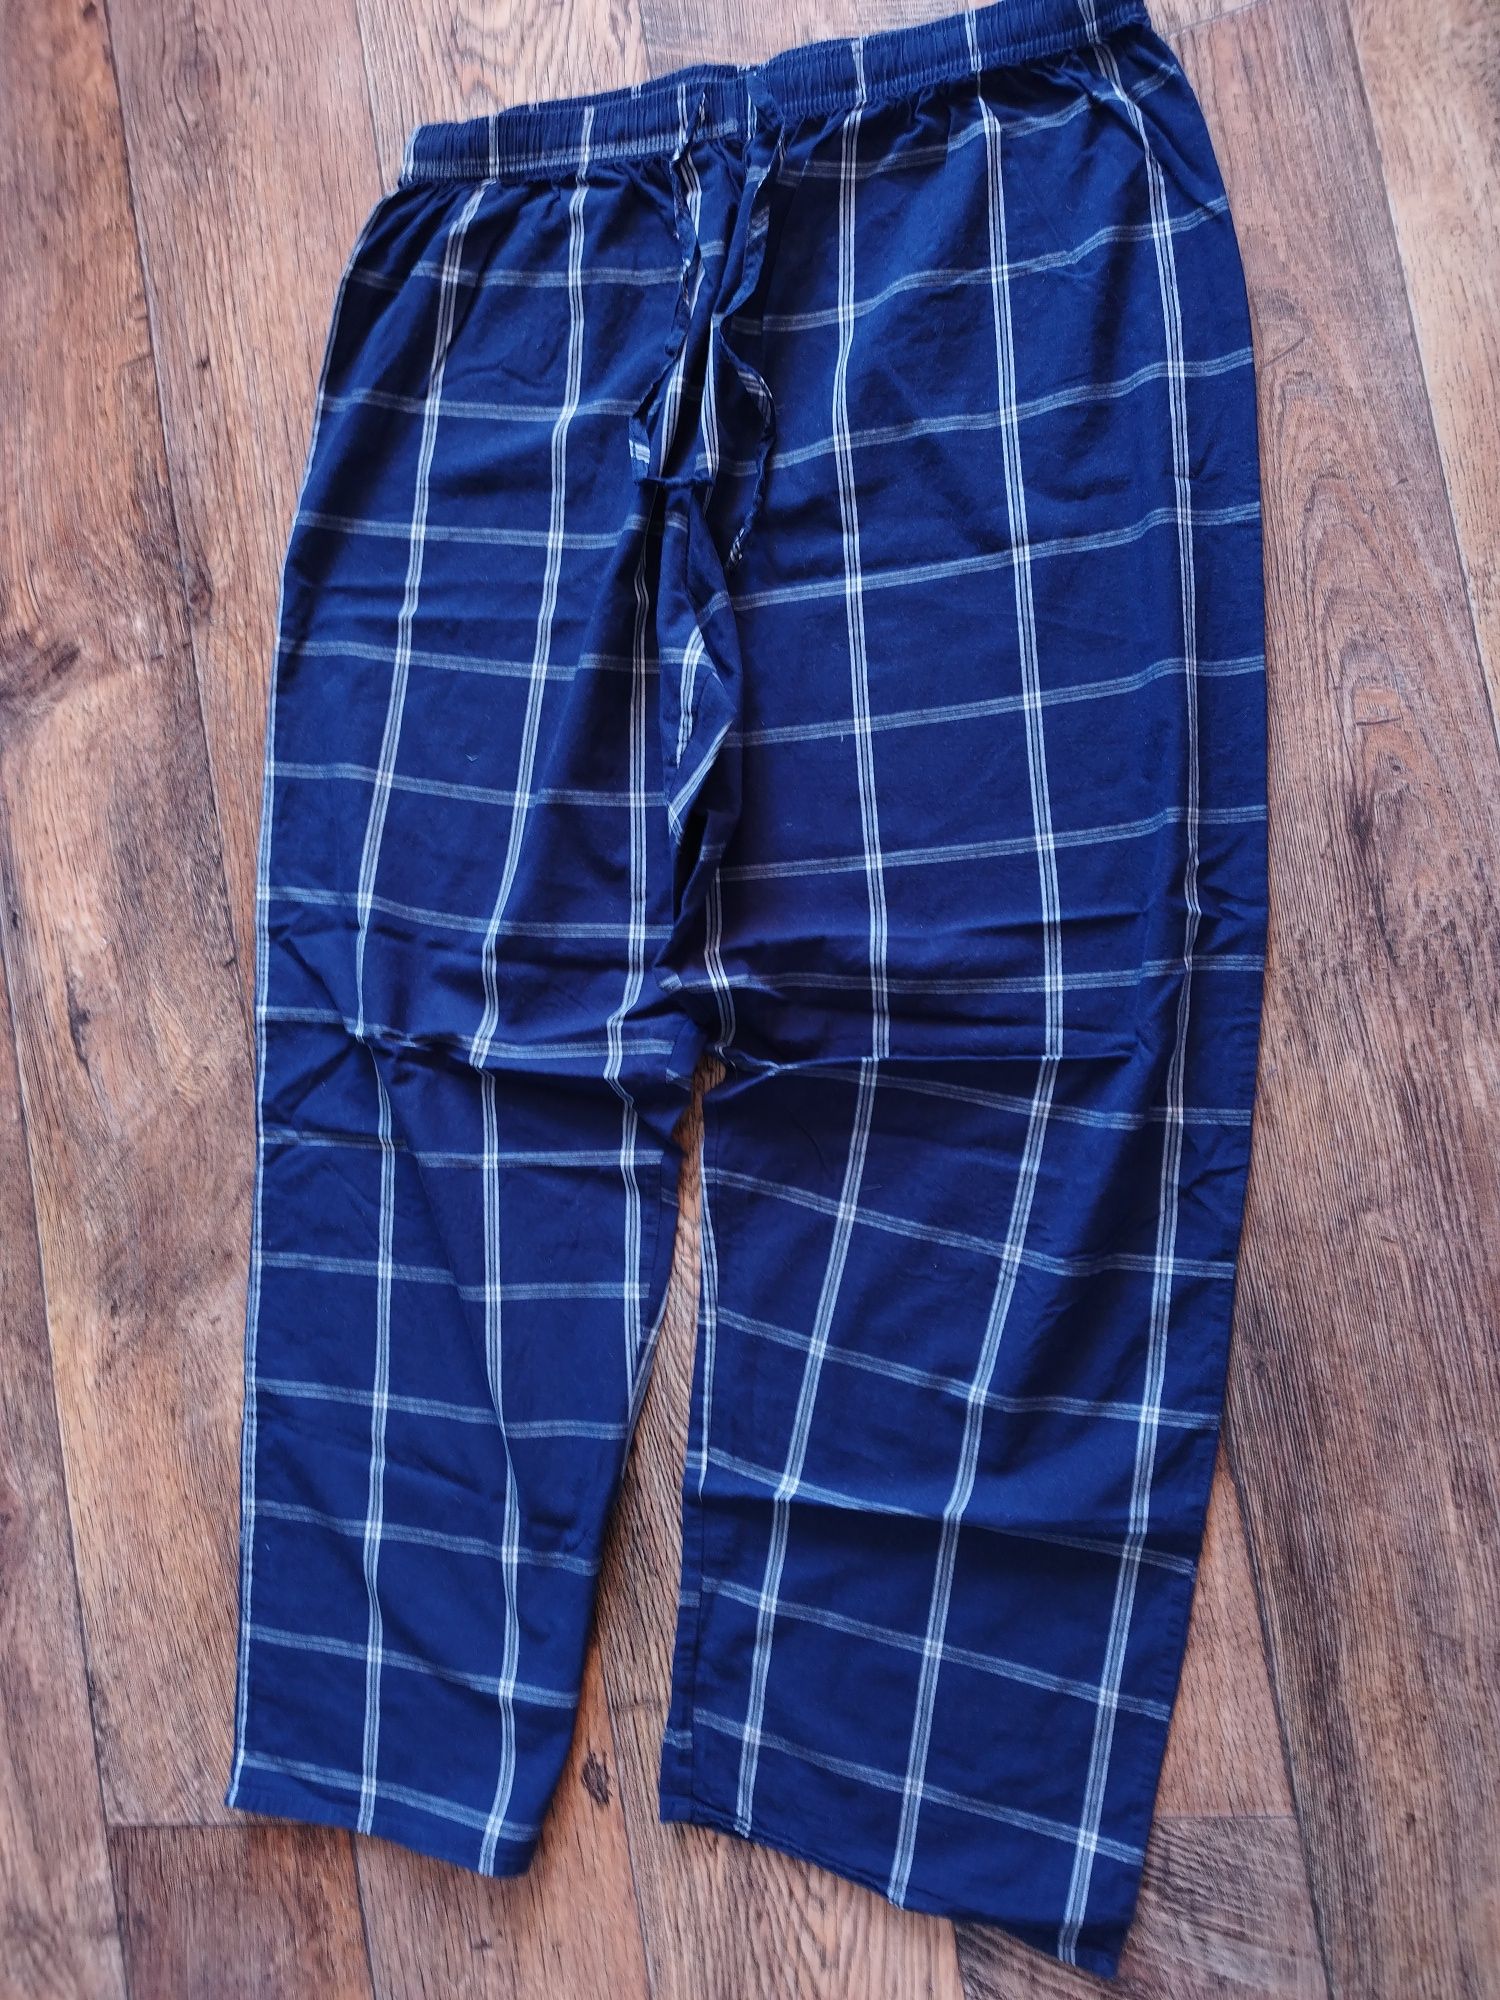 Piżama komplet spodnie i koszulka do spania